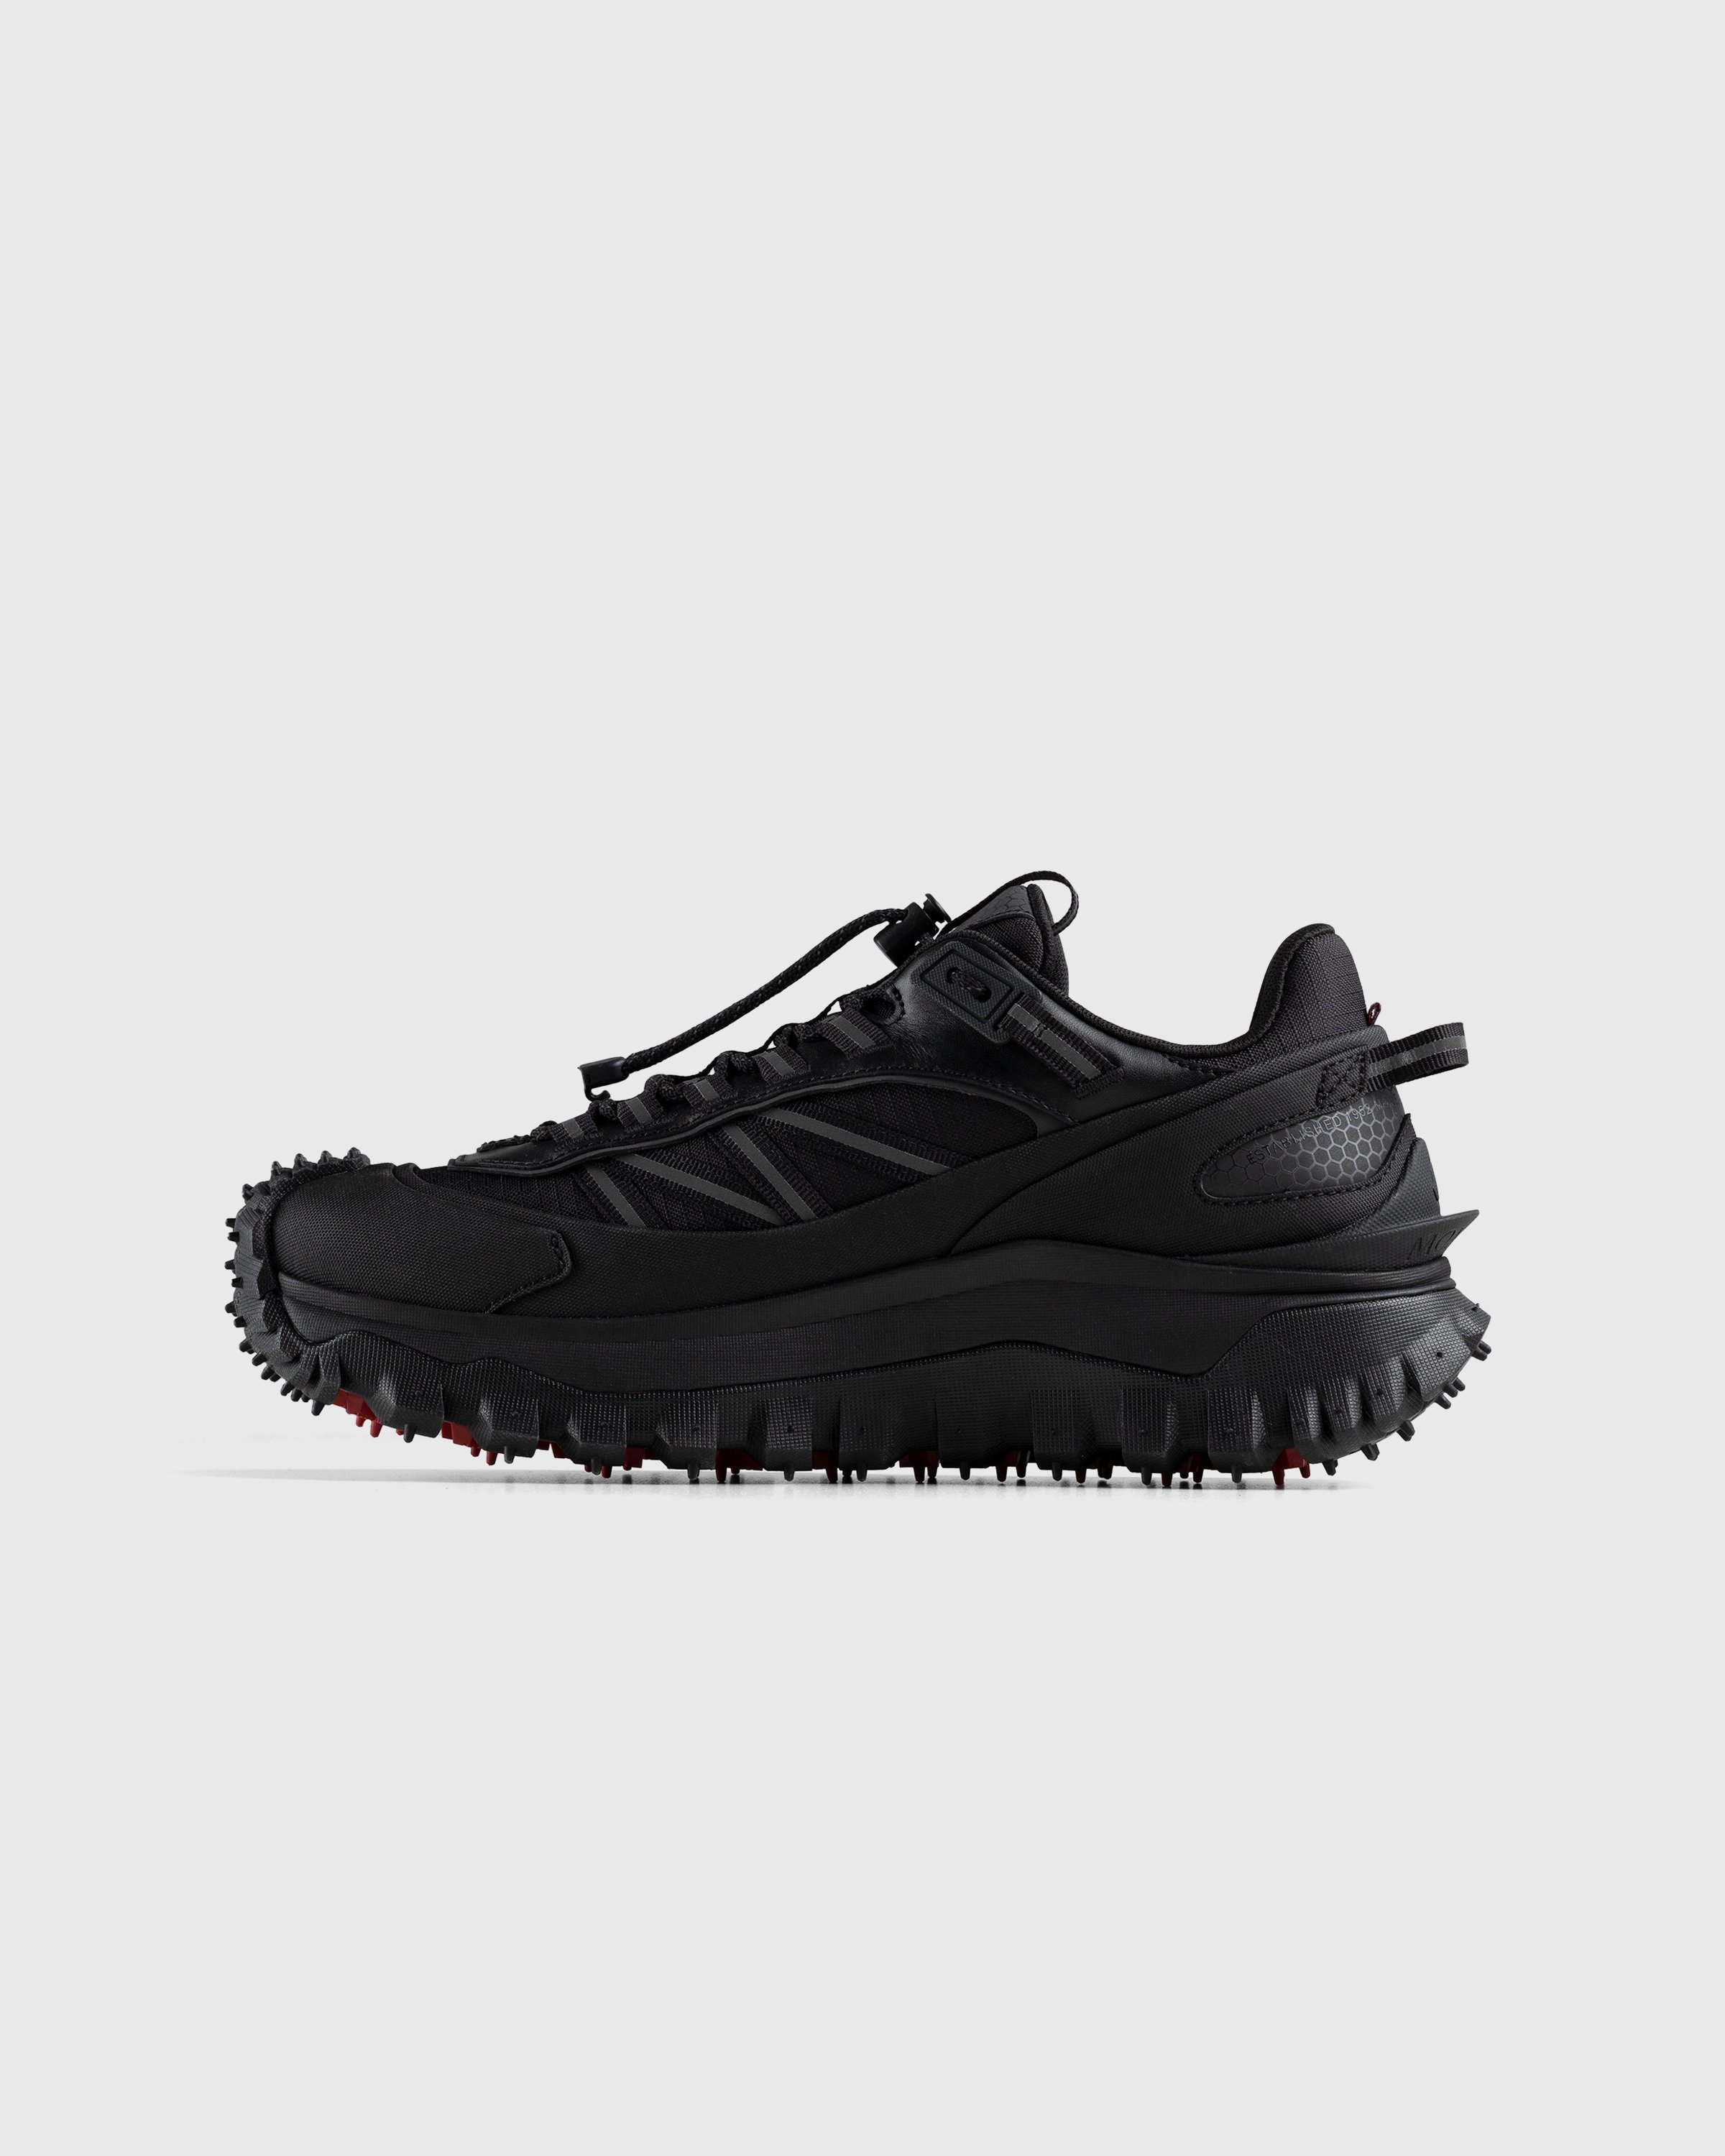 Moncler - Trailgrip GTX Sneakers Black - Footwear - Black - Image 2